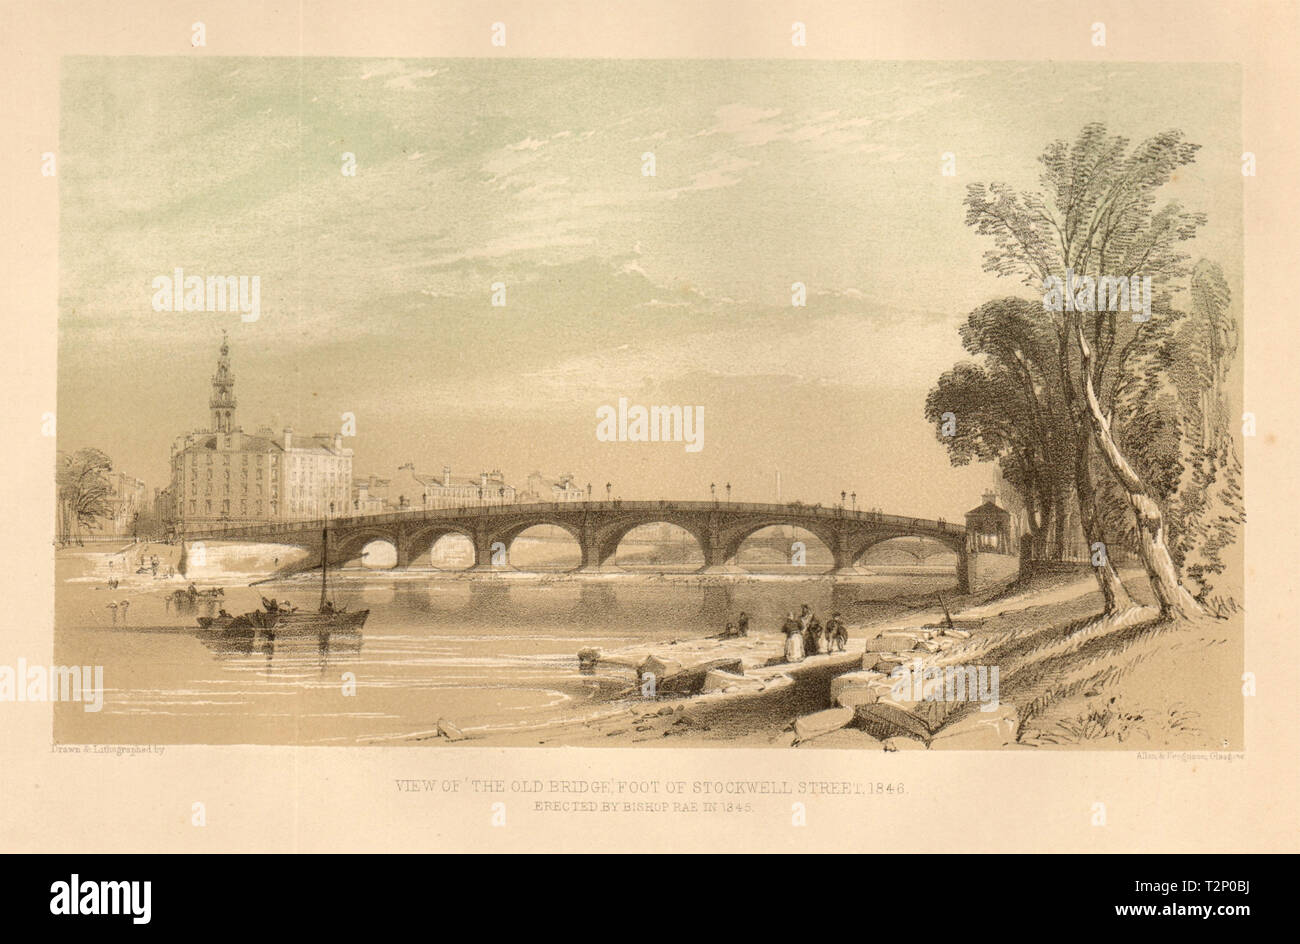 Blick auf die Alte Brücke, Fuß von Stockwell Street, 1846, Glasgow 1848 Drucken Stockfoto